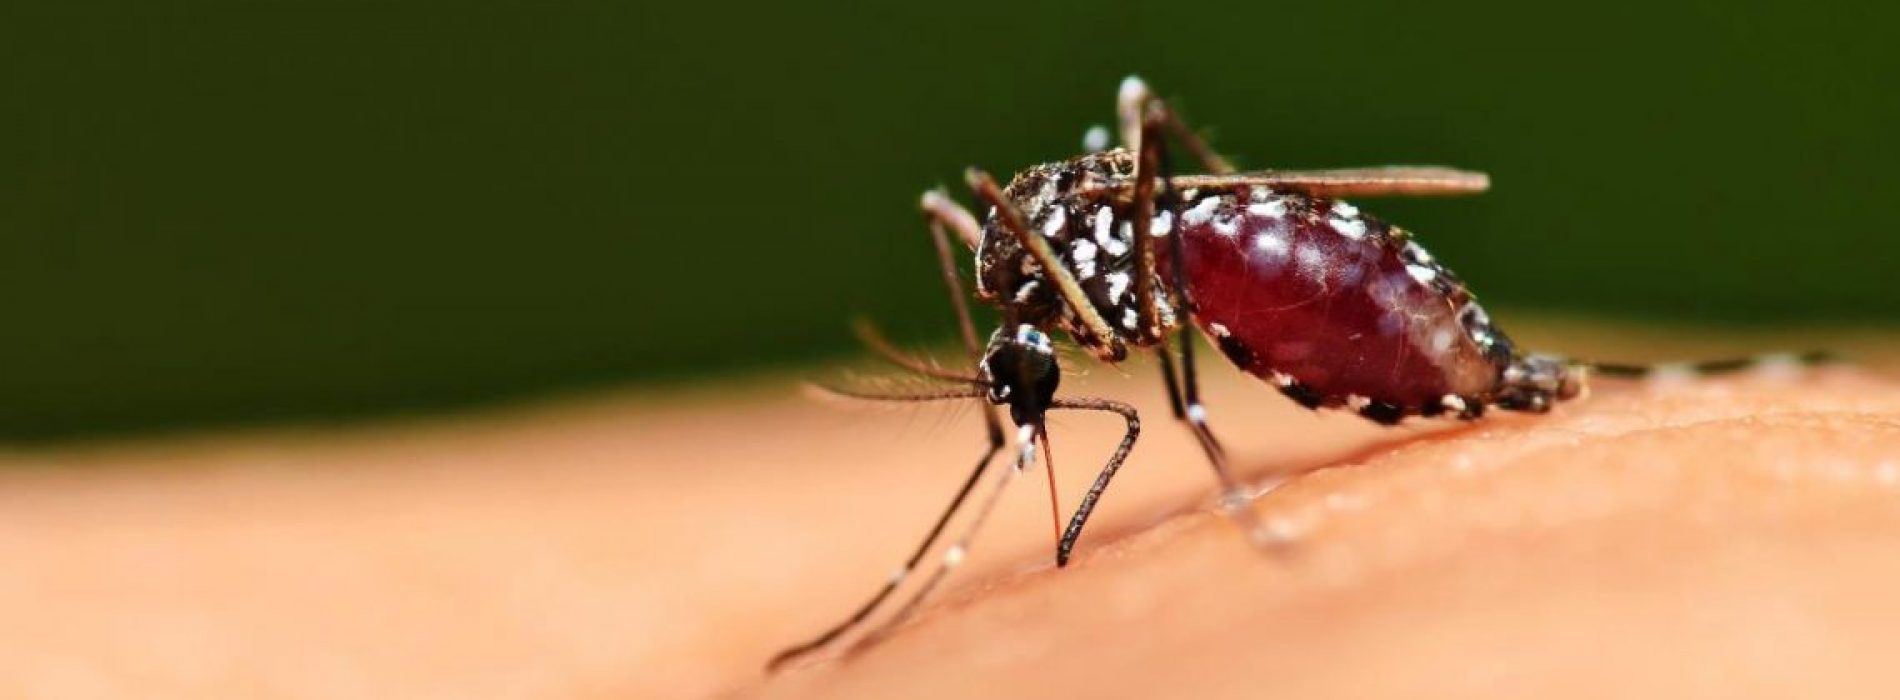 Wetenschappers die met de natuur knoeien, hebben een nieuw ras van genetisch gemodificeerde SUPER-muggen losgelaten